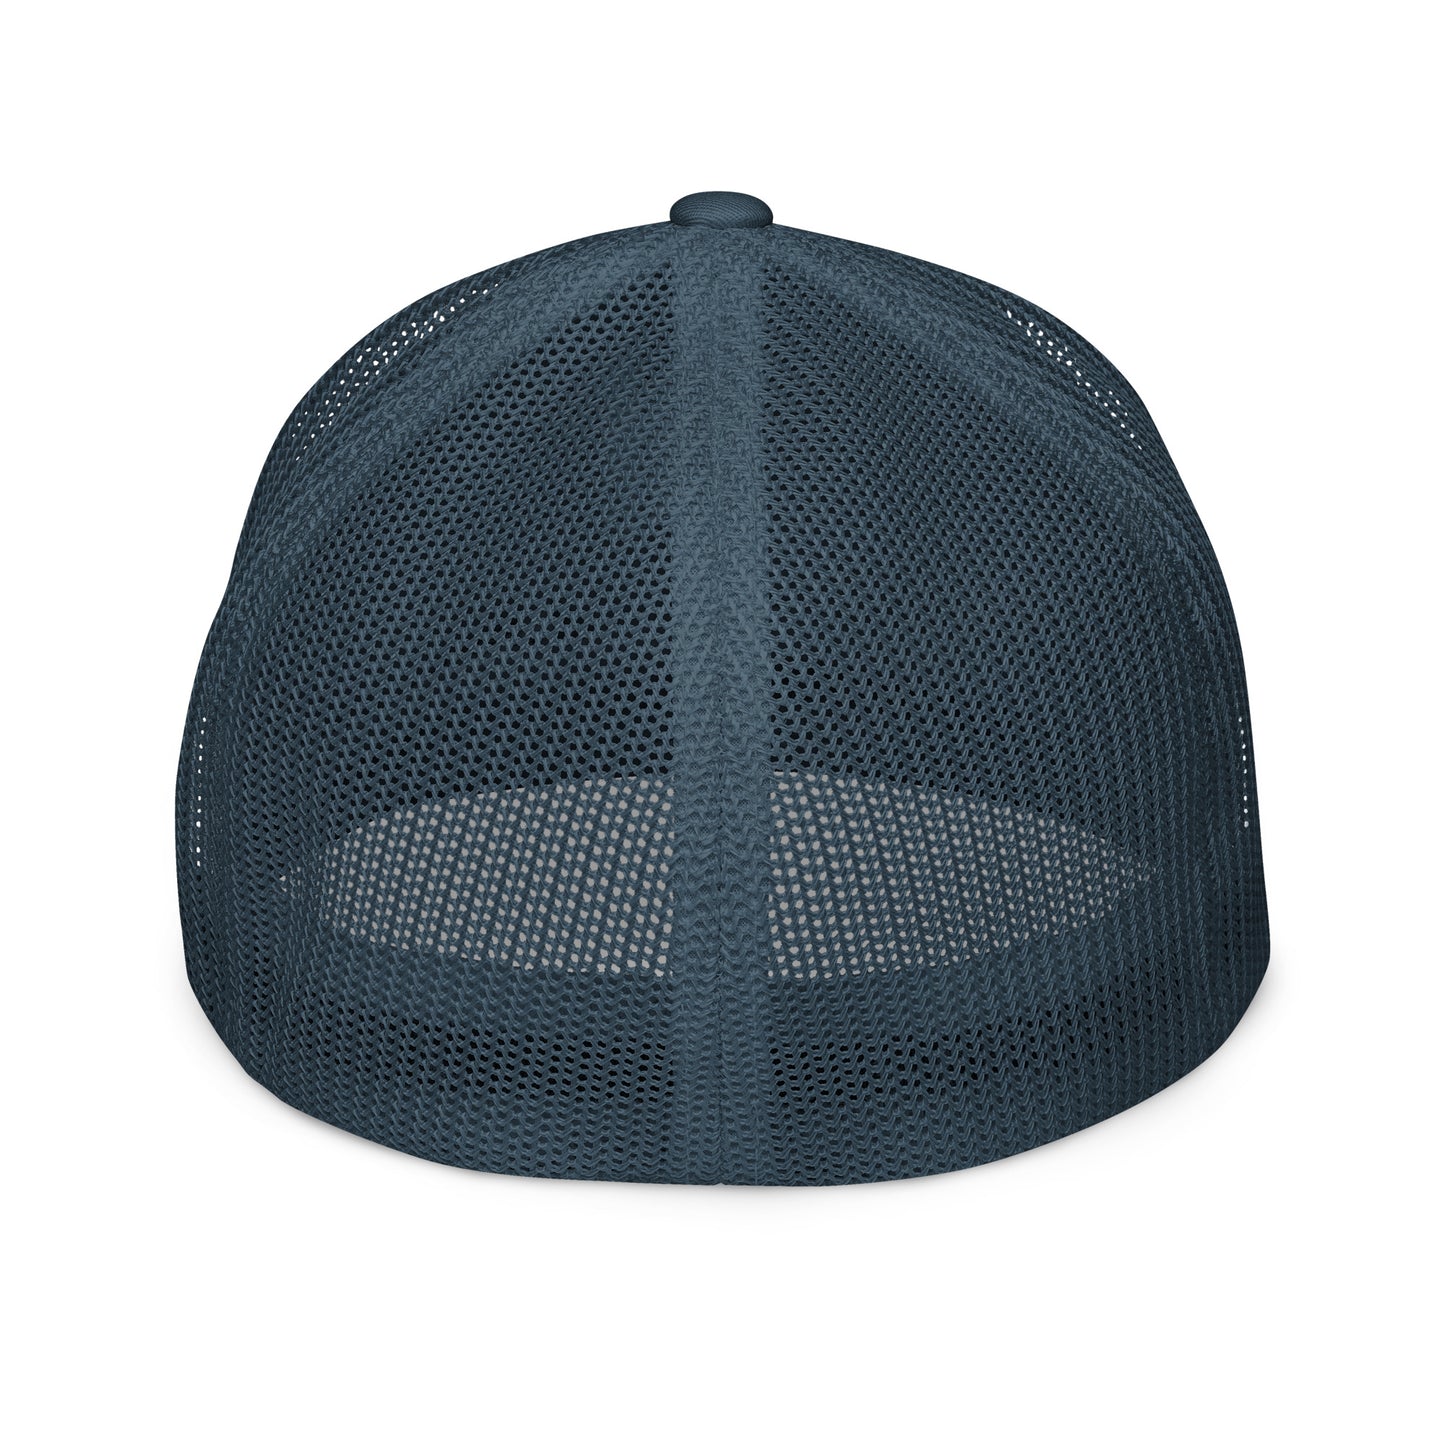 Premium Fitted mesh back cap